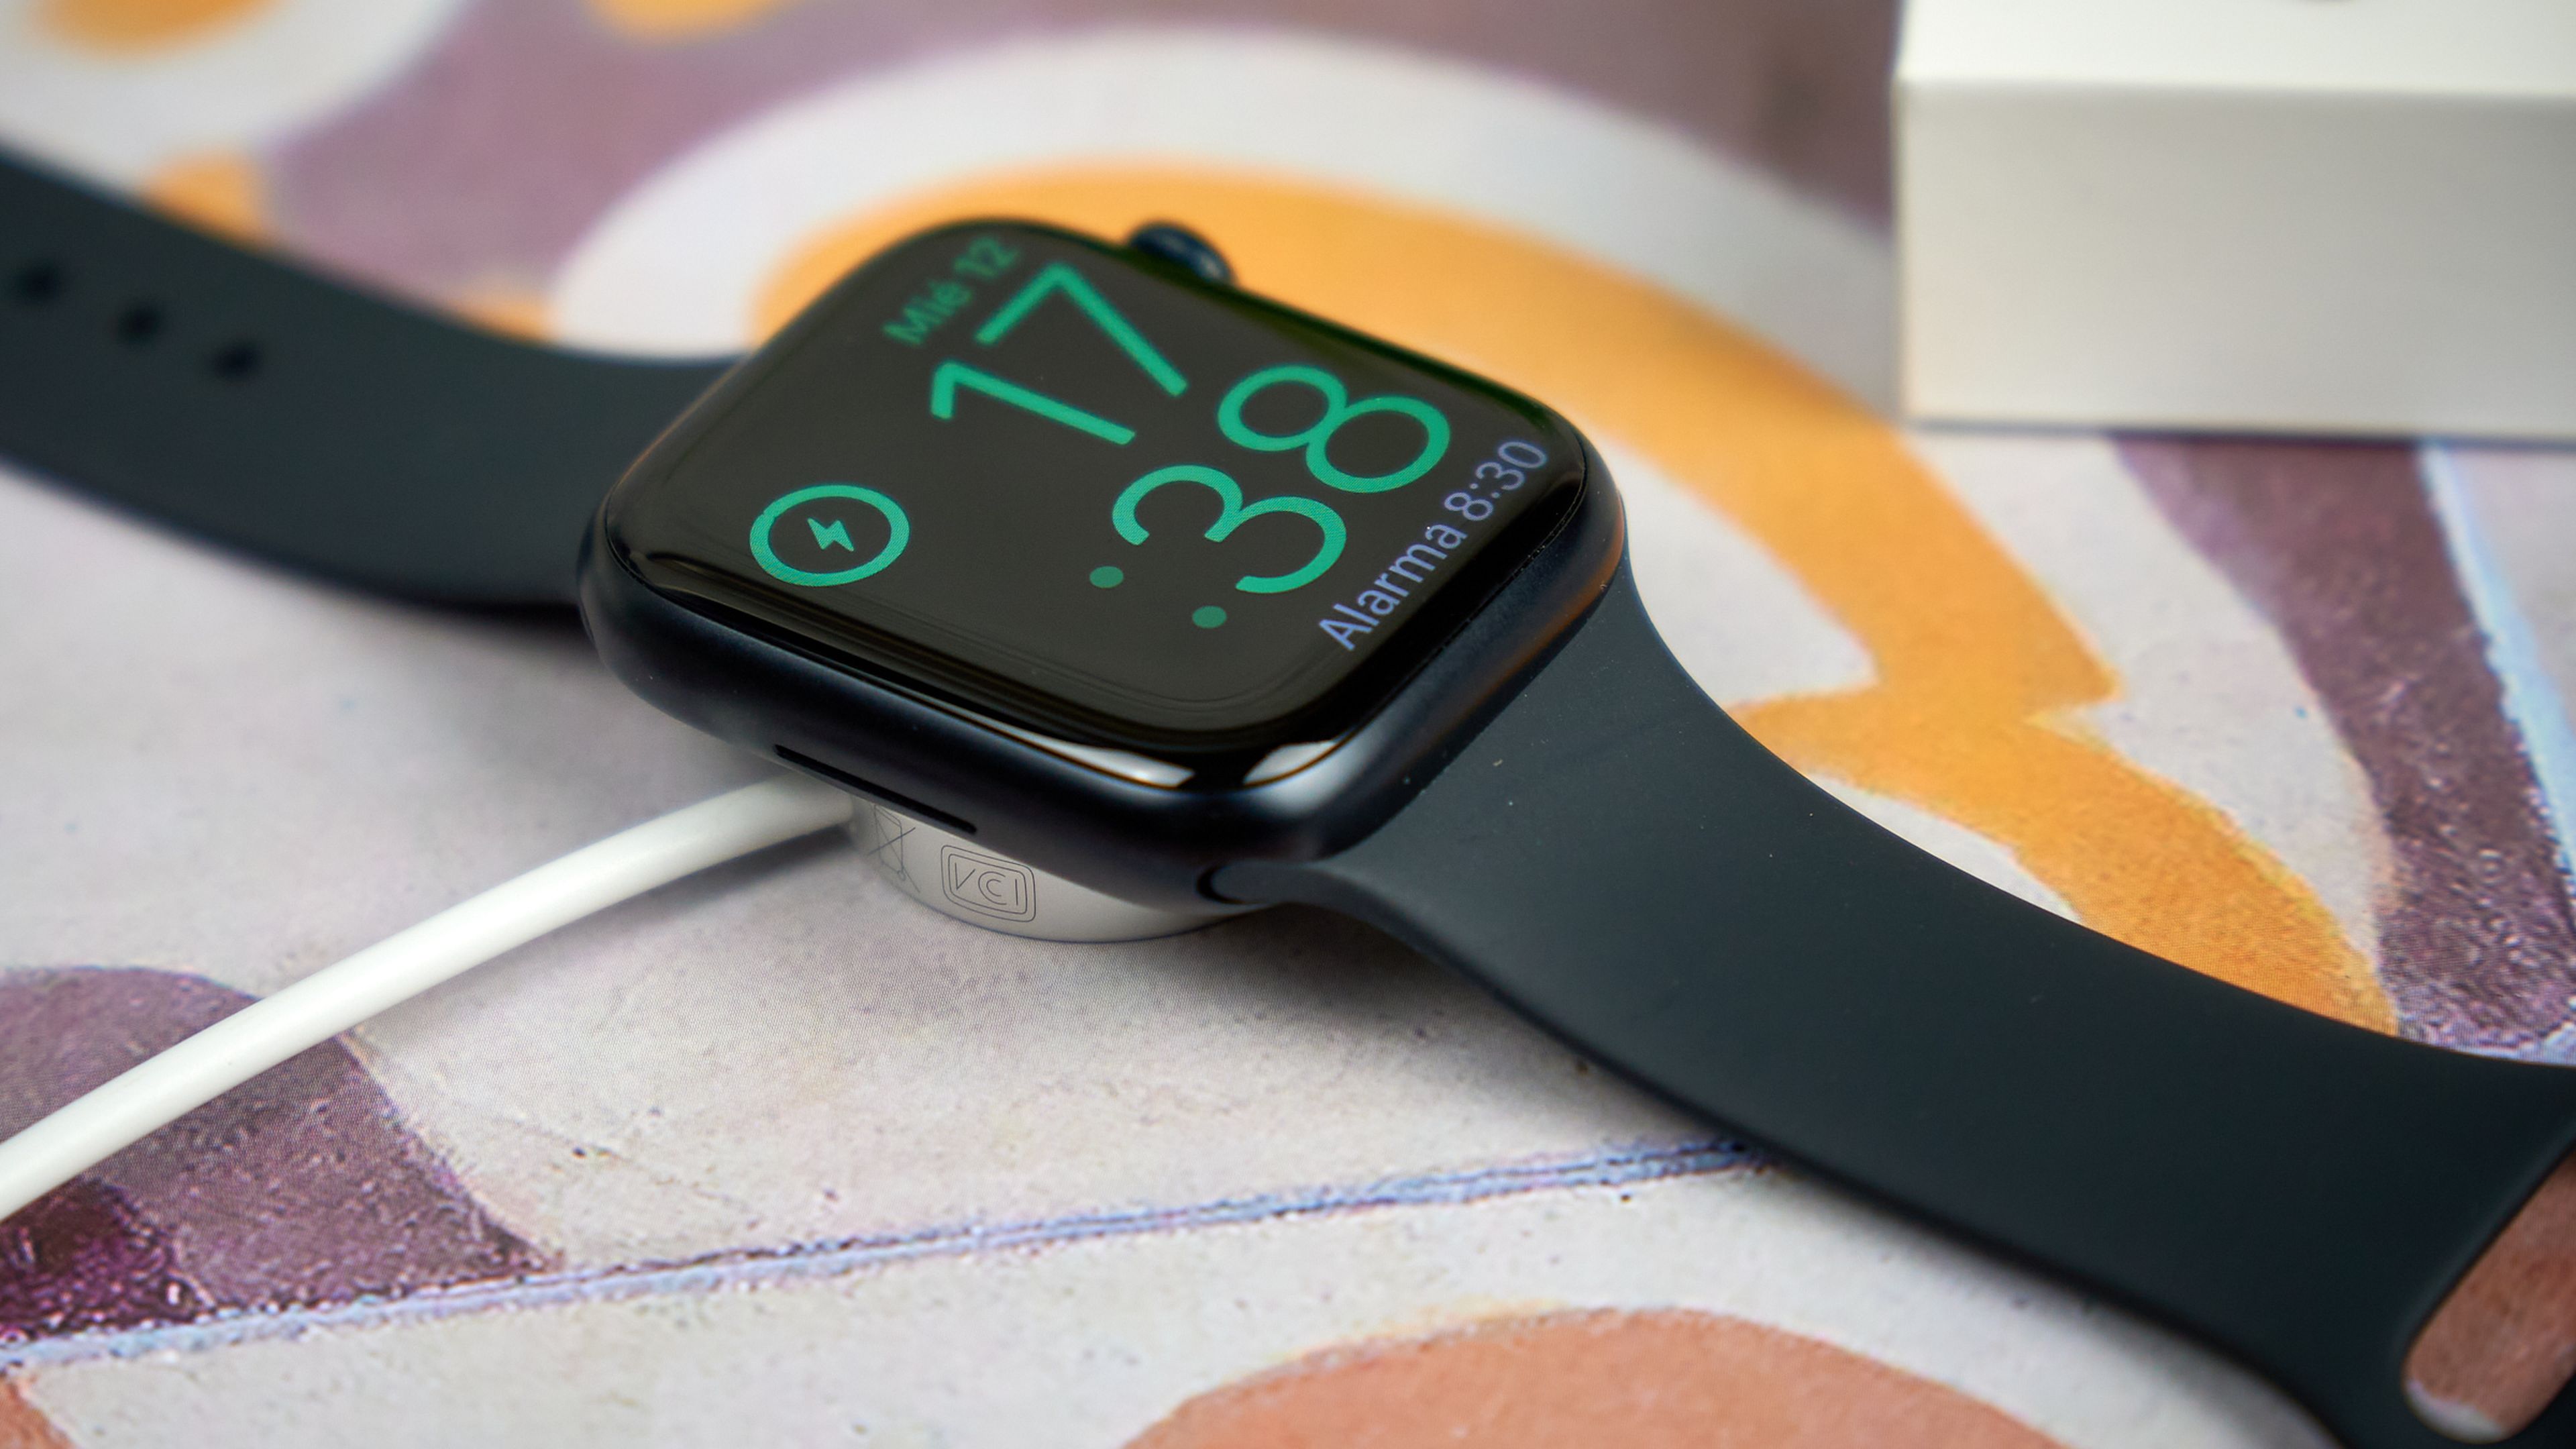 Apple Watch Series 8, análisis: review con características, precio y  especificaciones